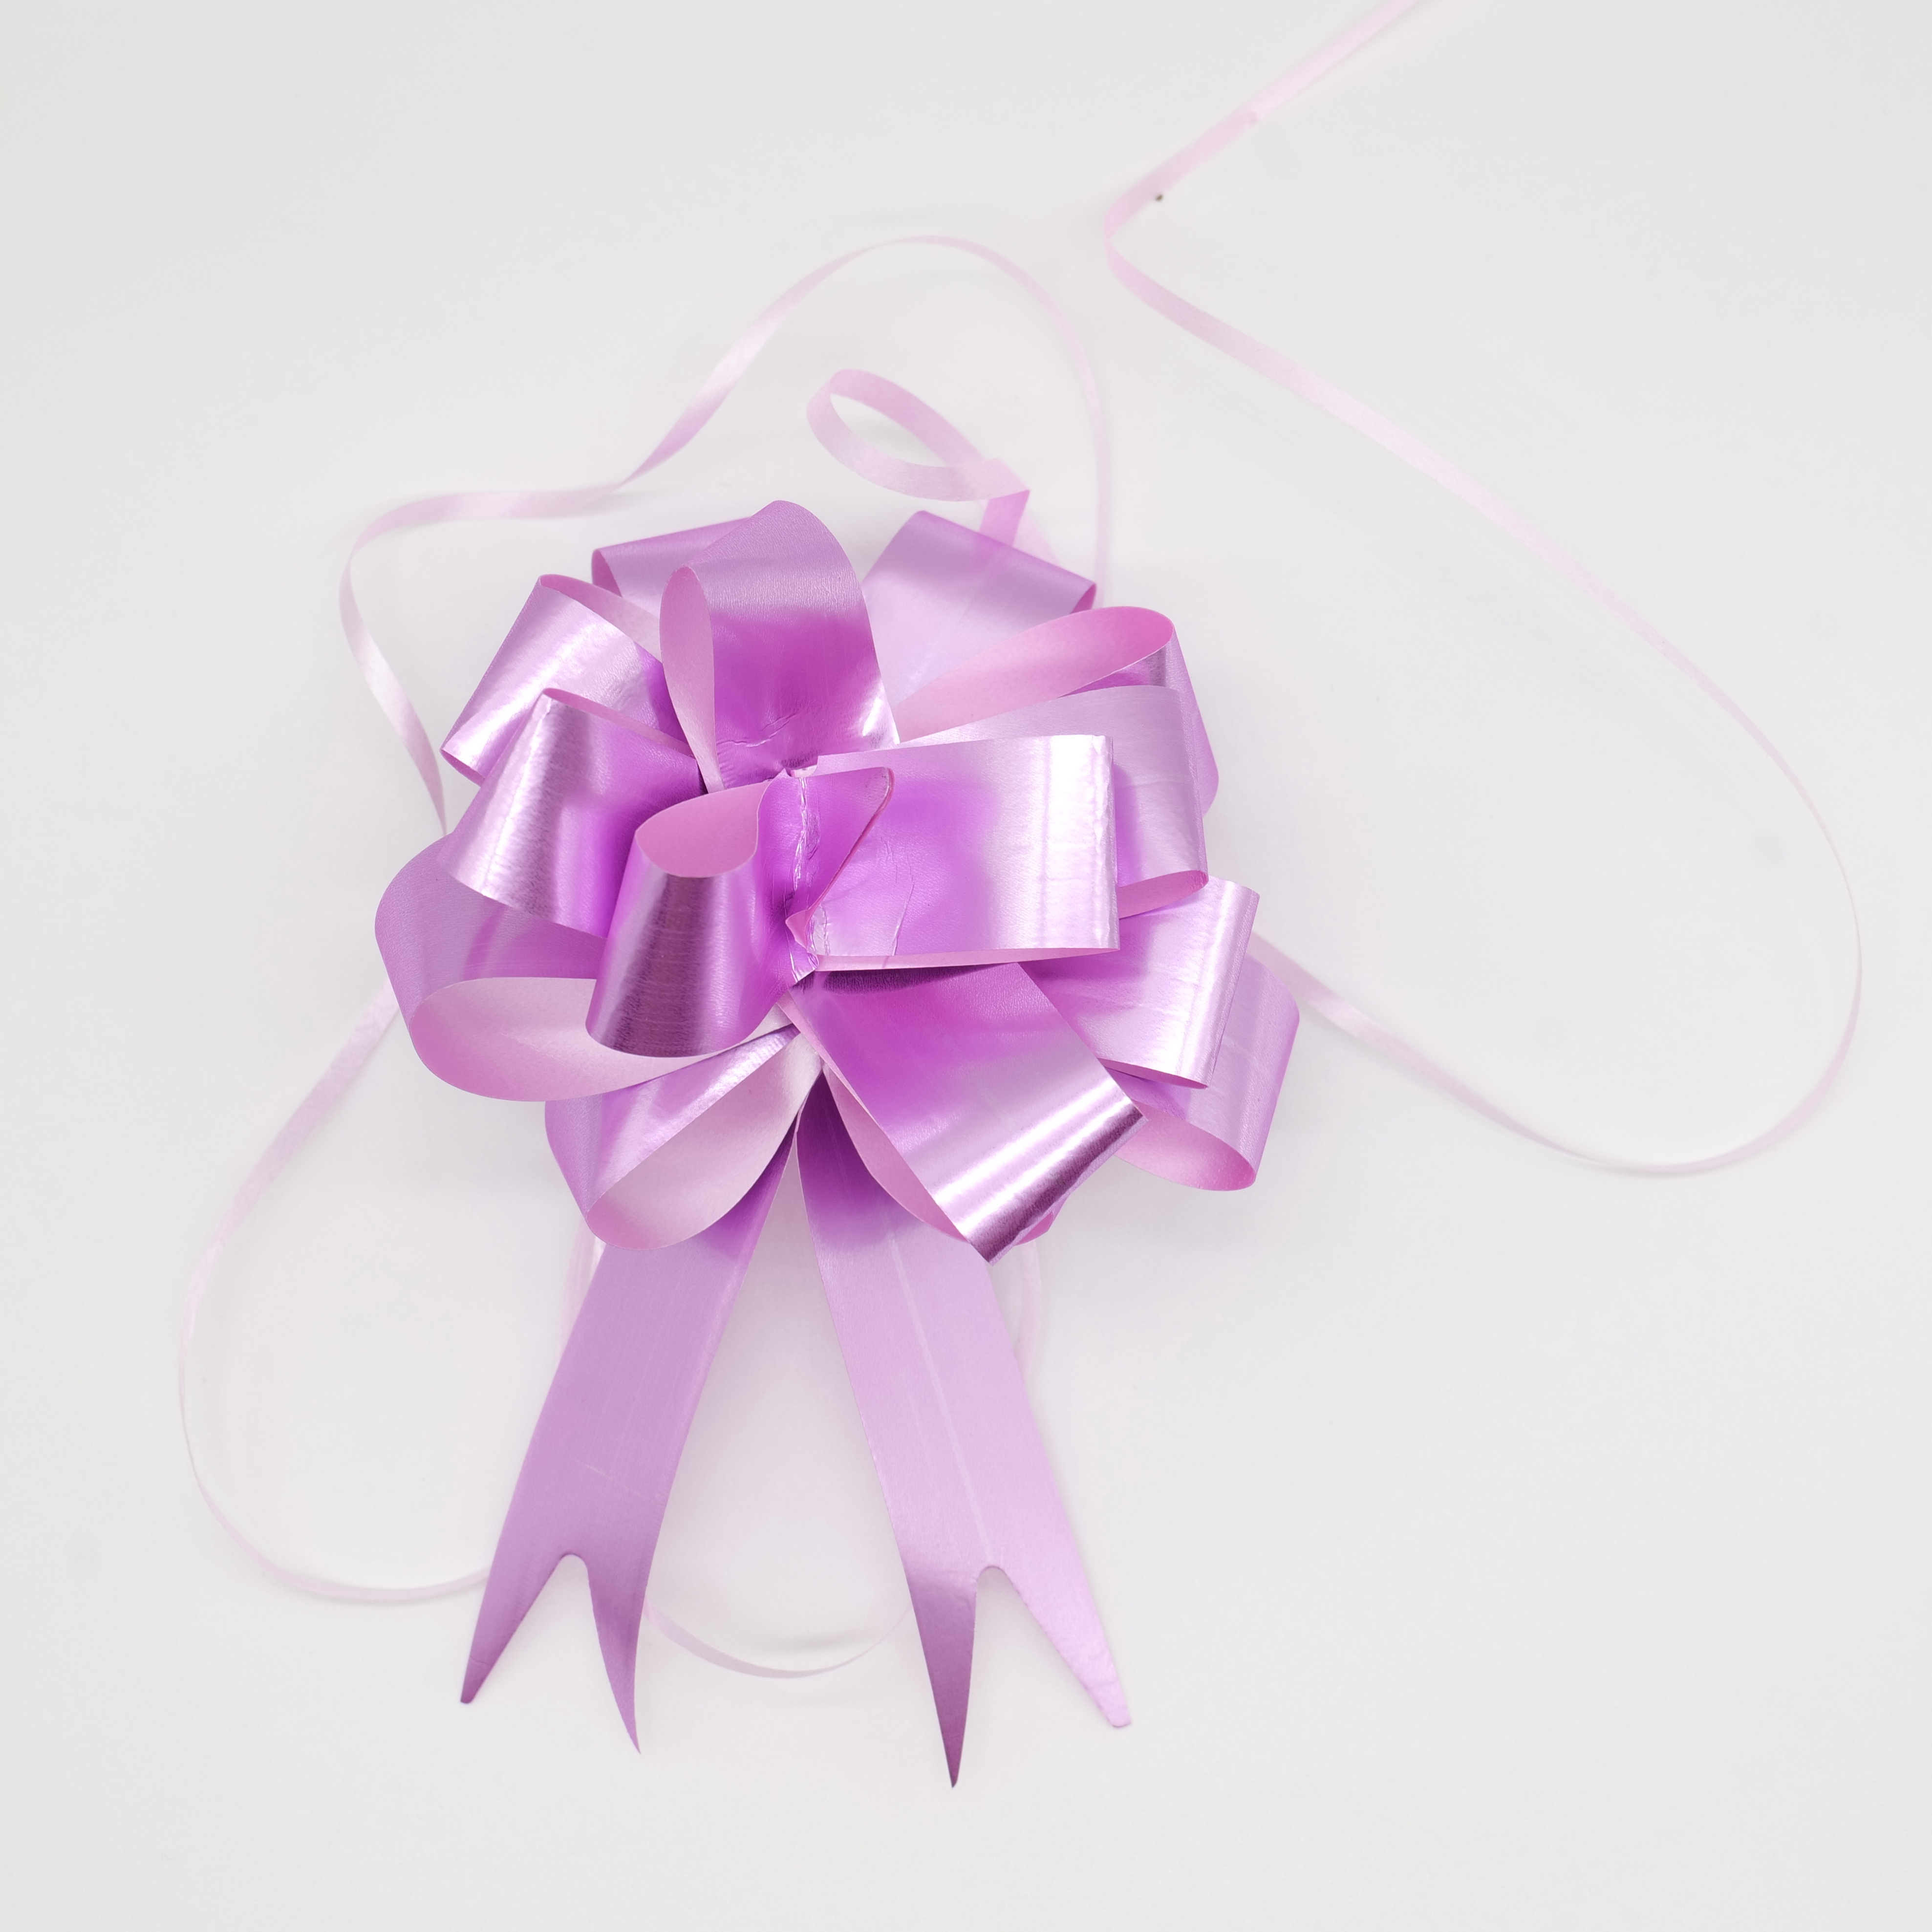 60pcs, Lazos de regalo de lazo de cinta de Navidad para adornos de regalo  de caja/bolsa Lazos de cinta para envolver regalos Lazos de cinta para fiest